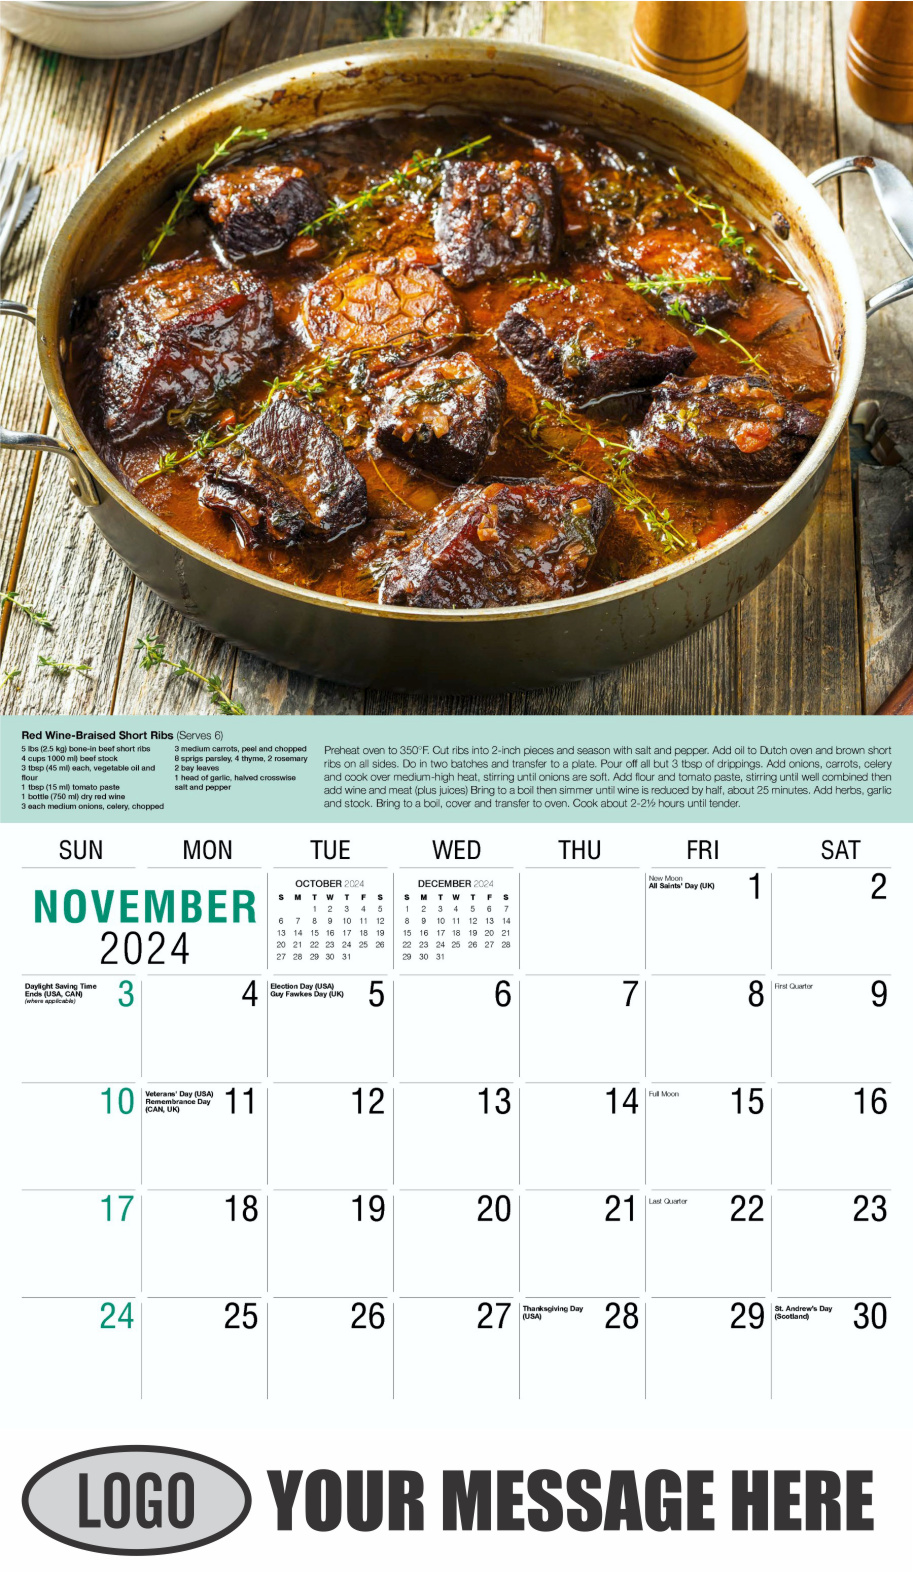 Recipes 2024 Business Promotional Calendar - November